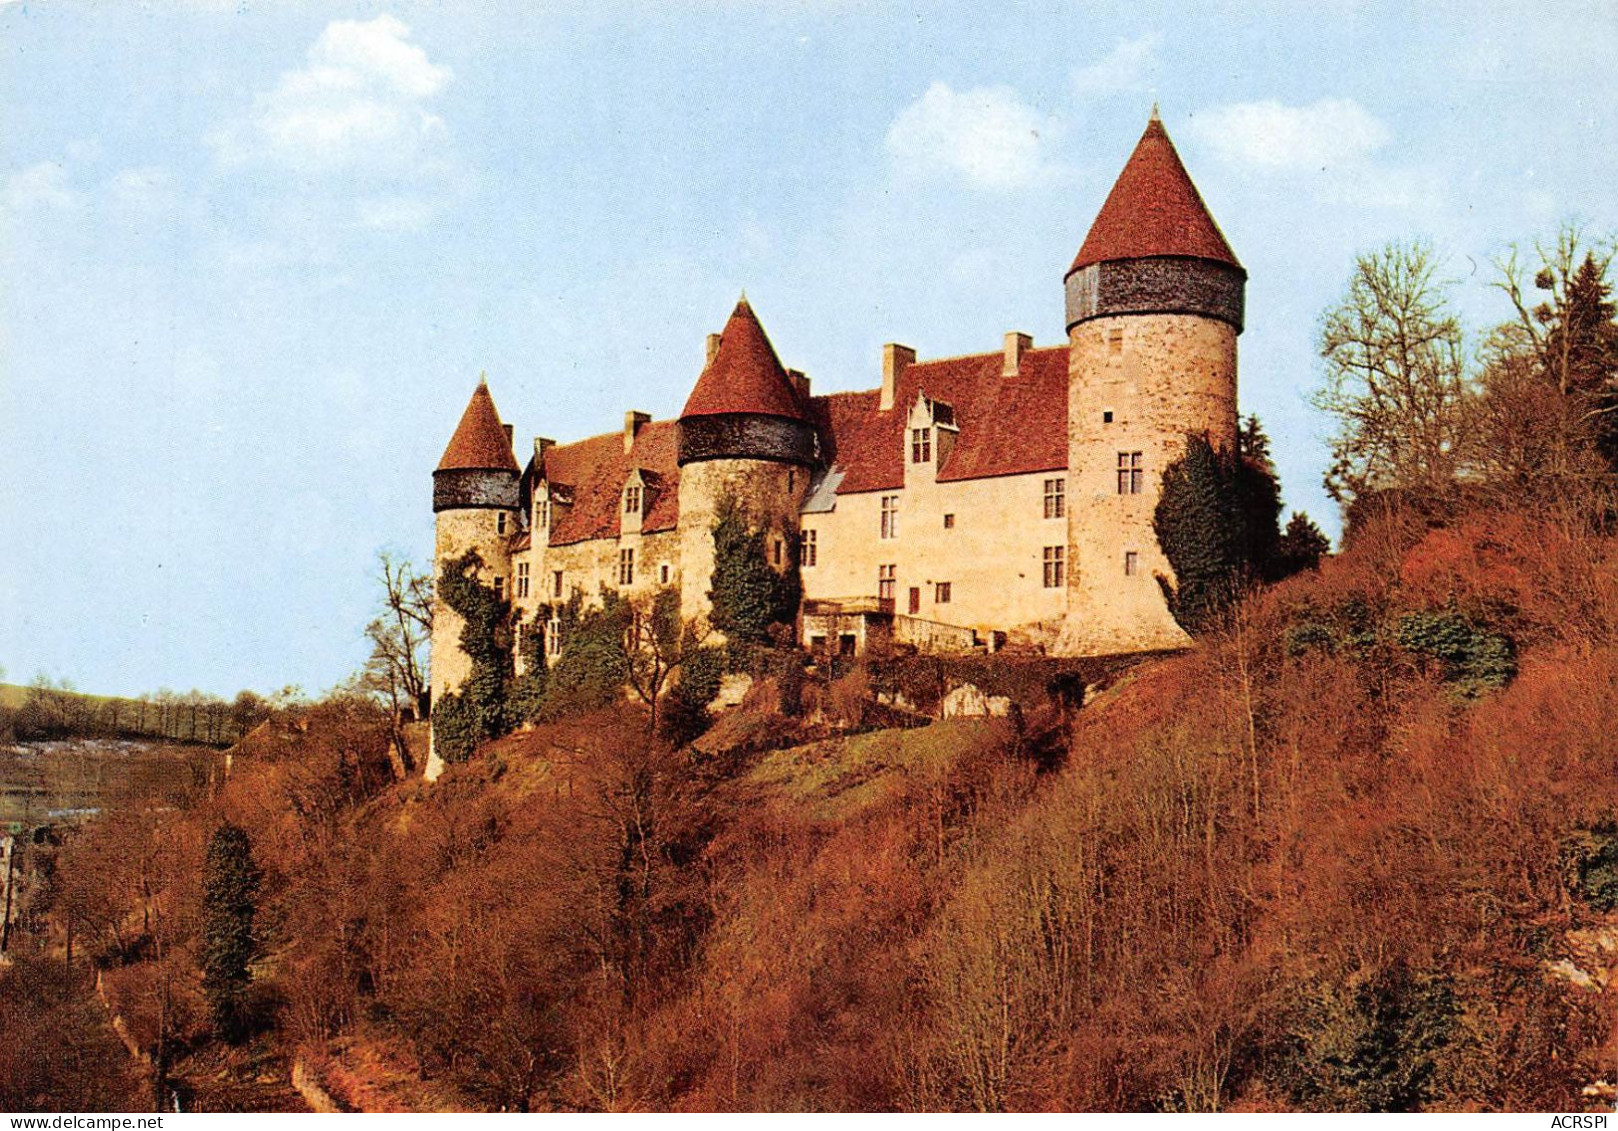 18 Chateau De CULAN Carte Vierge Non Circulé (Scan R/V) N° 49 \MS9016 - Chateauneuf Sur Cher